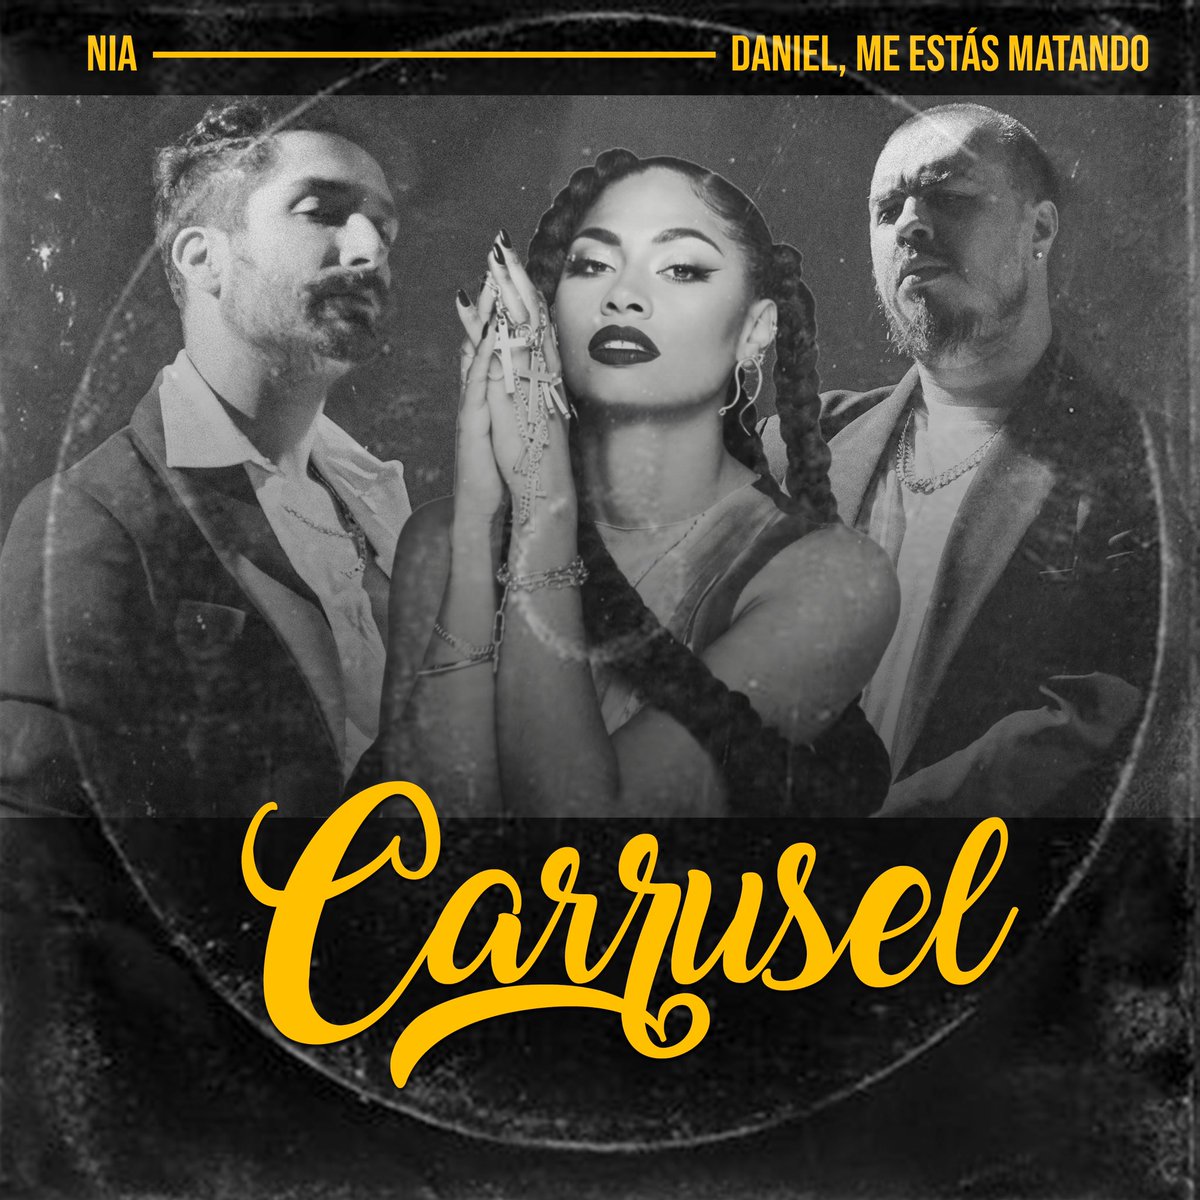 CARRUSEL ft #DanielMeEstasMatando 

23/06 a las 0:00  
Está noche !!!!! 

Ya está aquí # PaloSanto